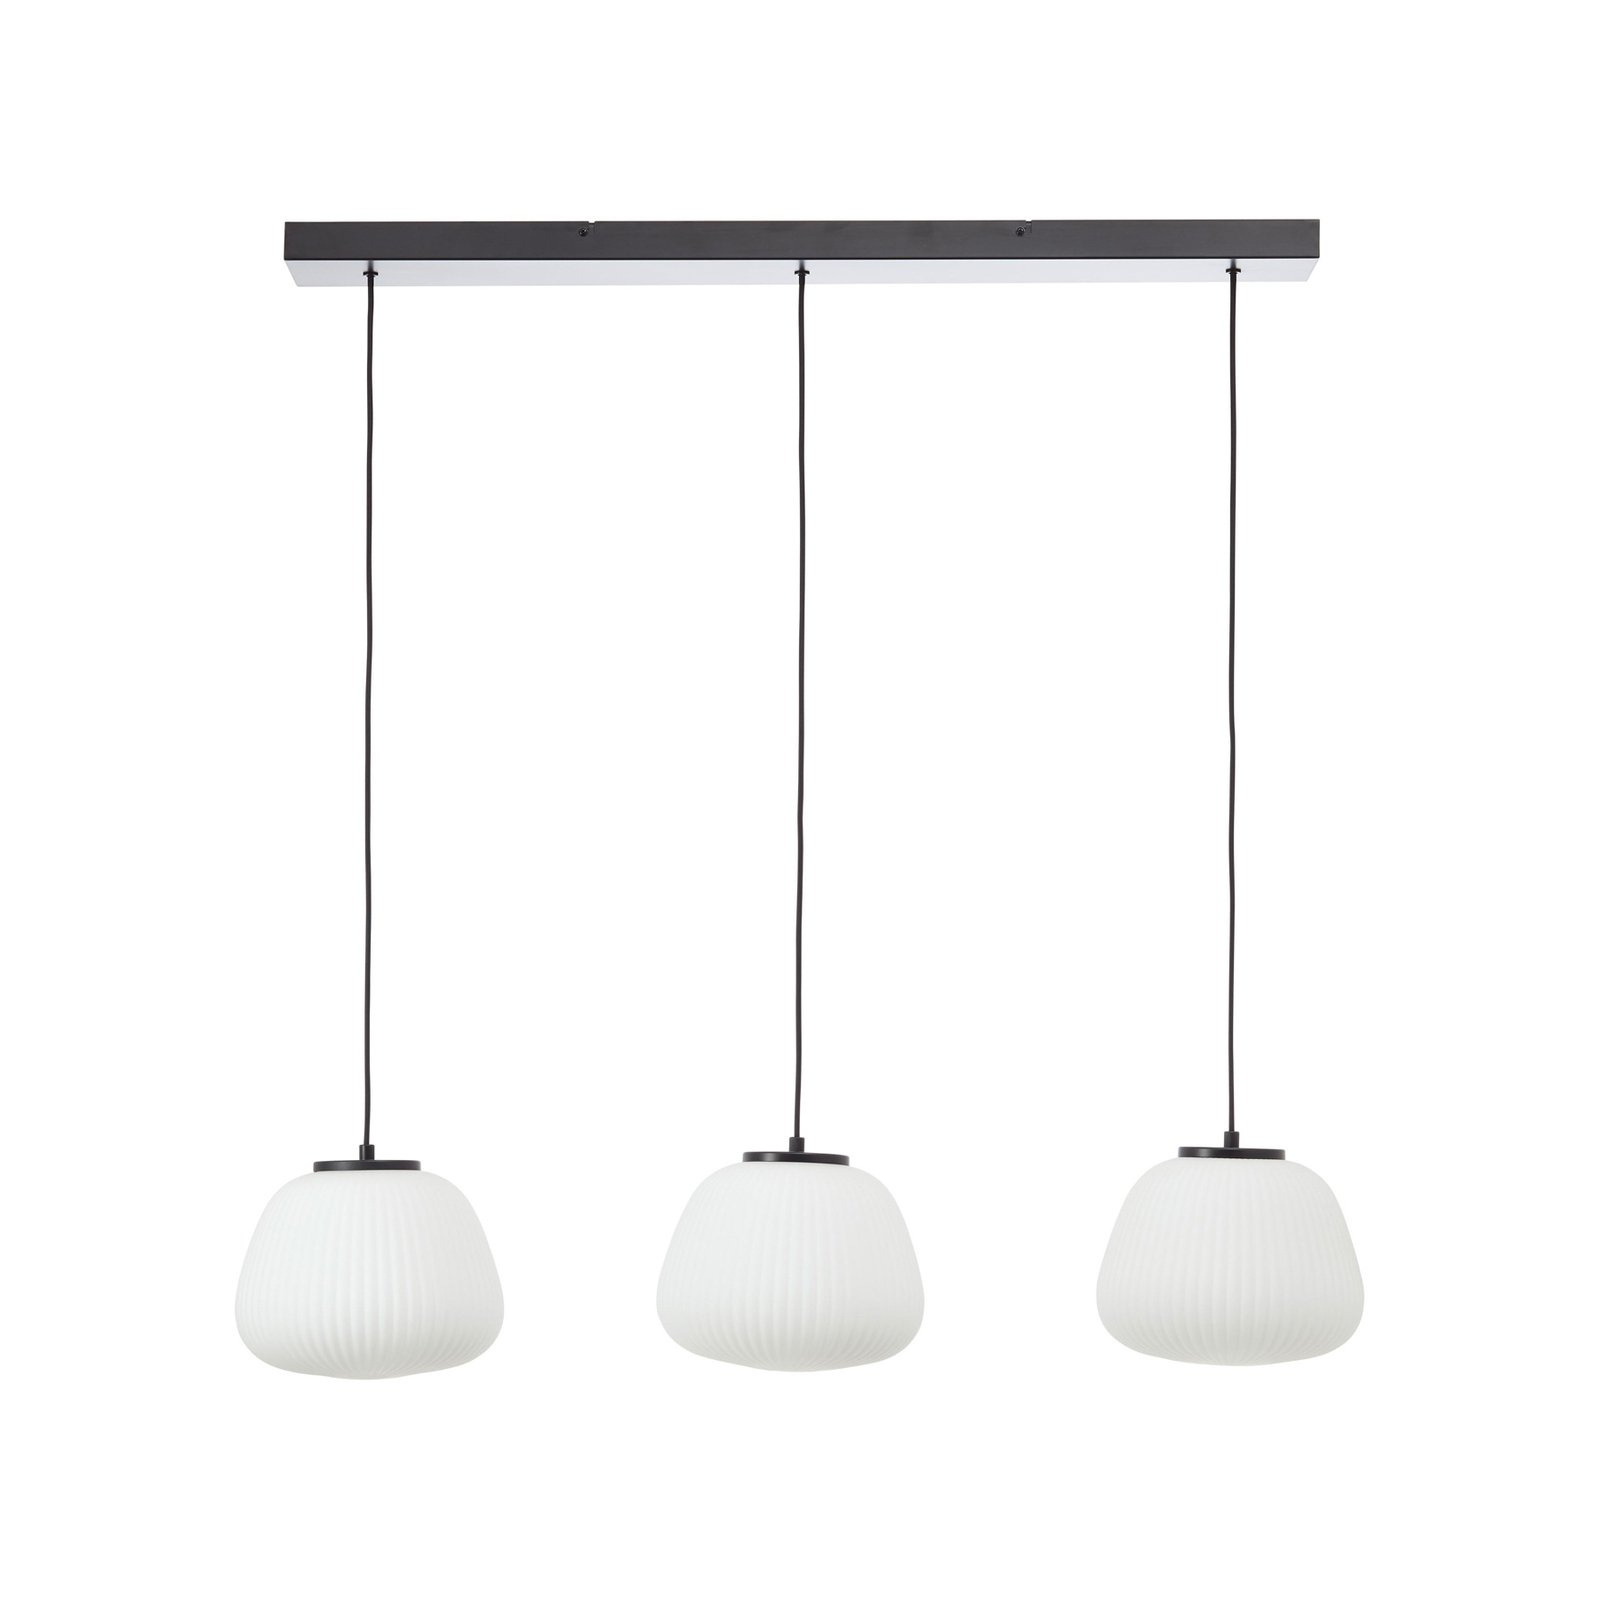 Kaizen hanging light, length 105 cm, opal, 3-bulb glass/metal